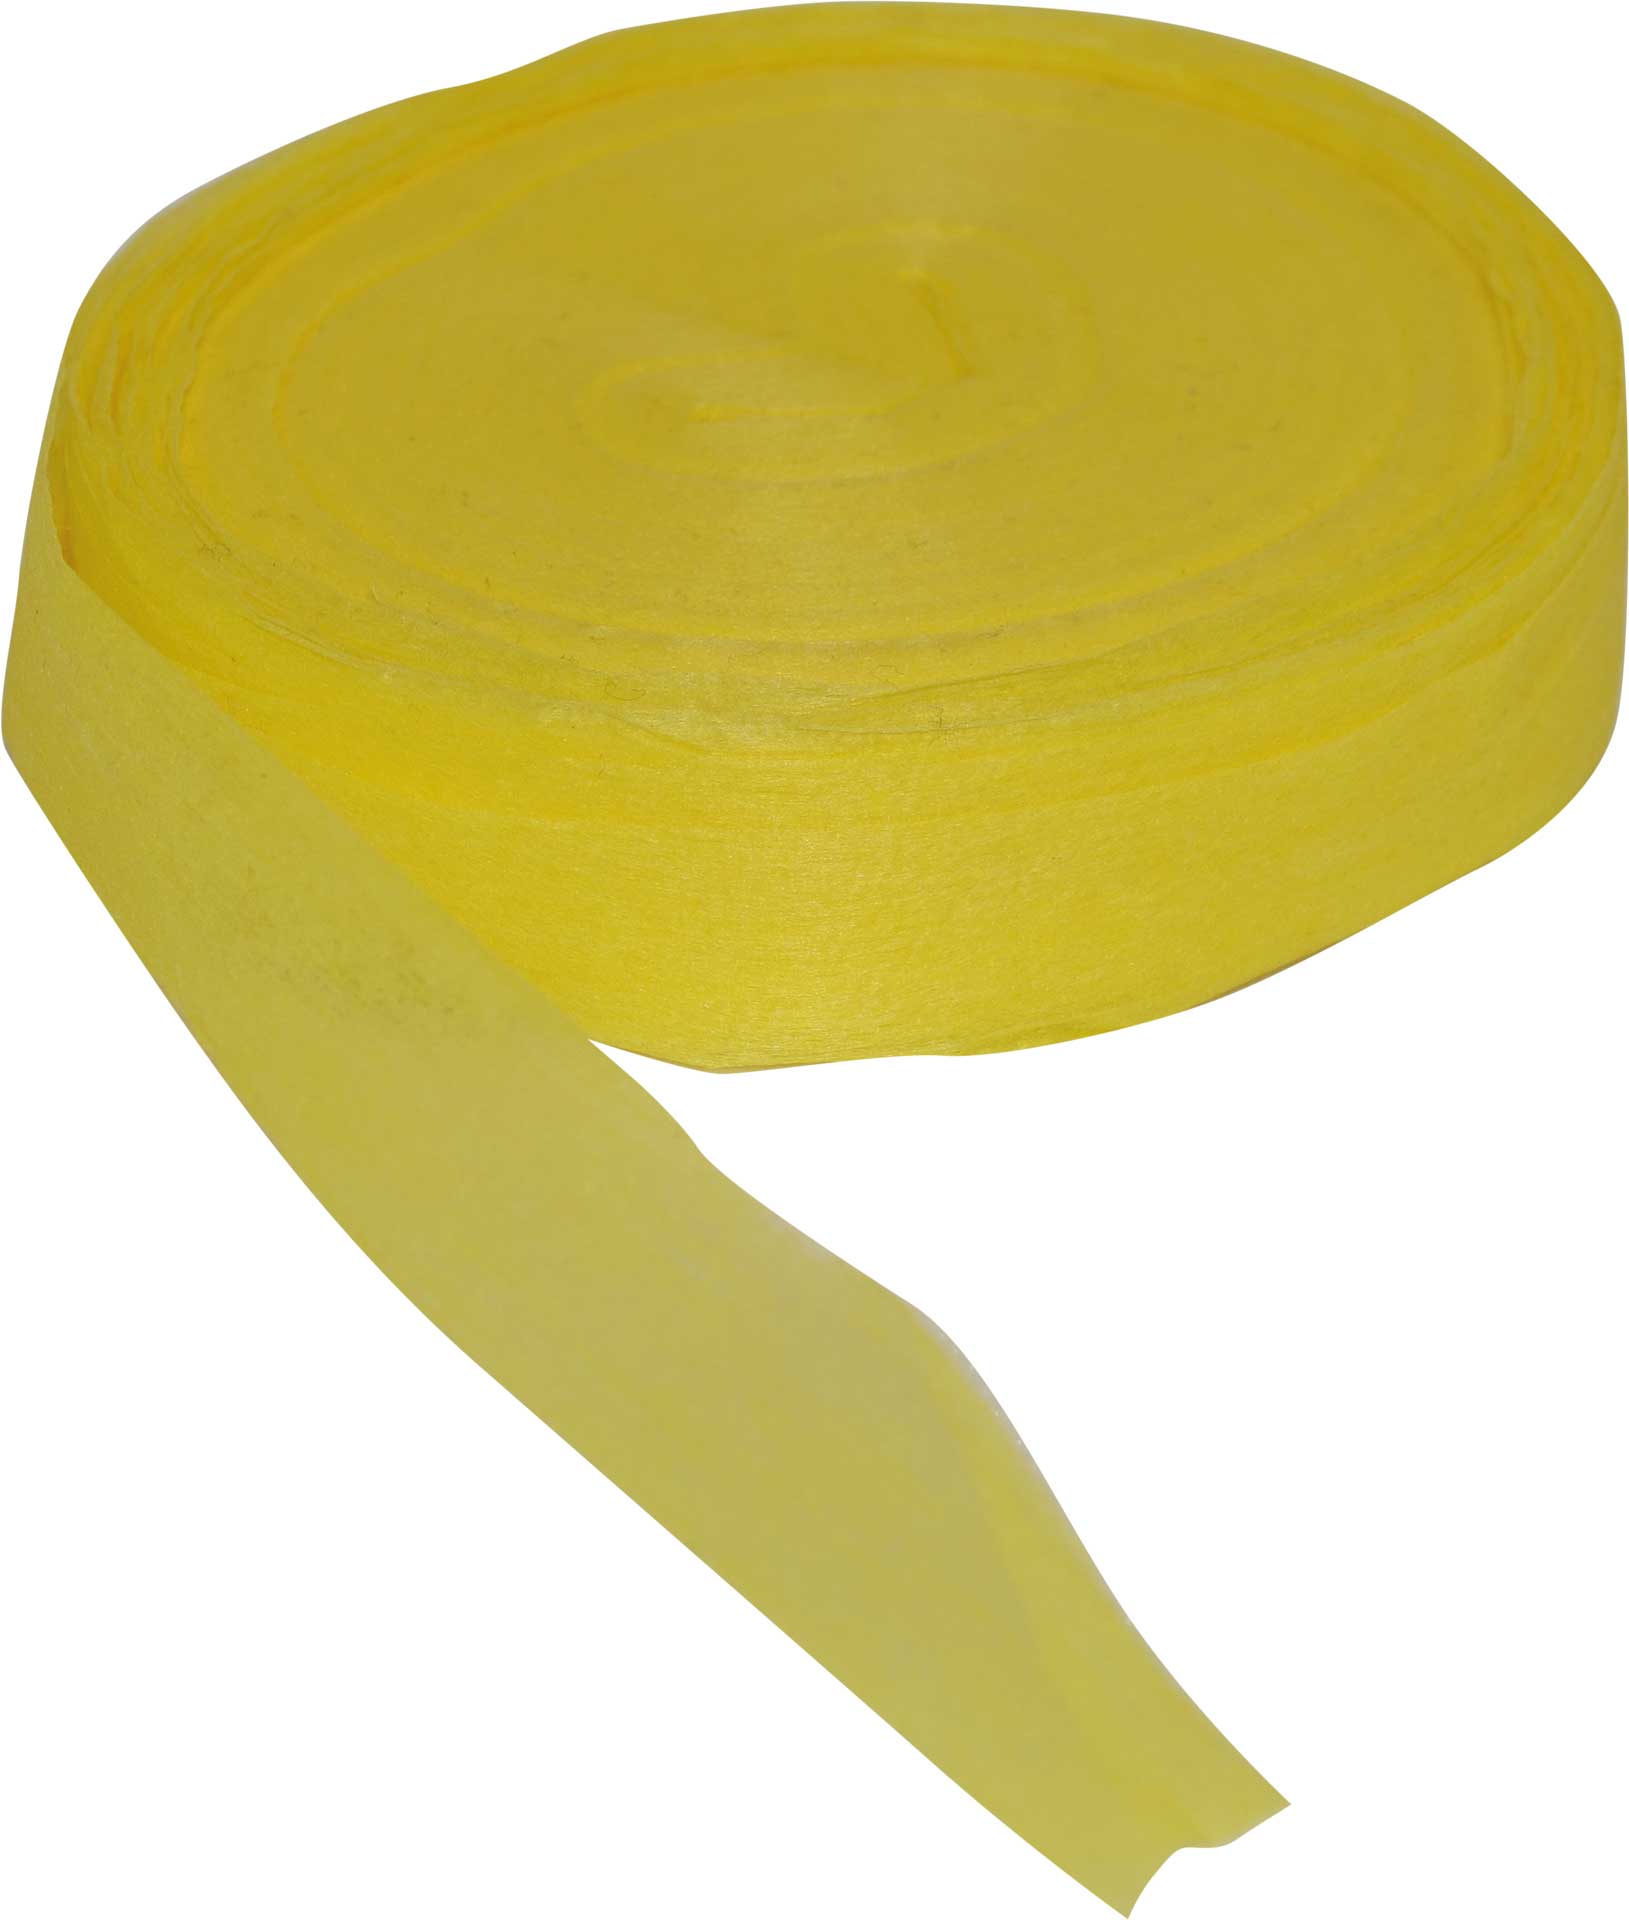 Robbe Modellsport Rubans pour Wingo 2 dans les couleurs jaune